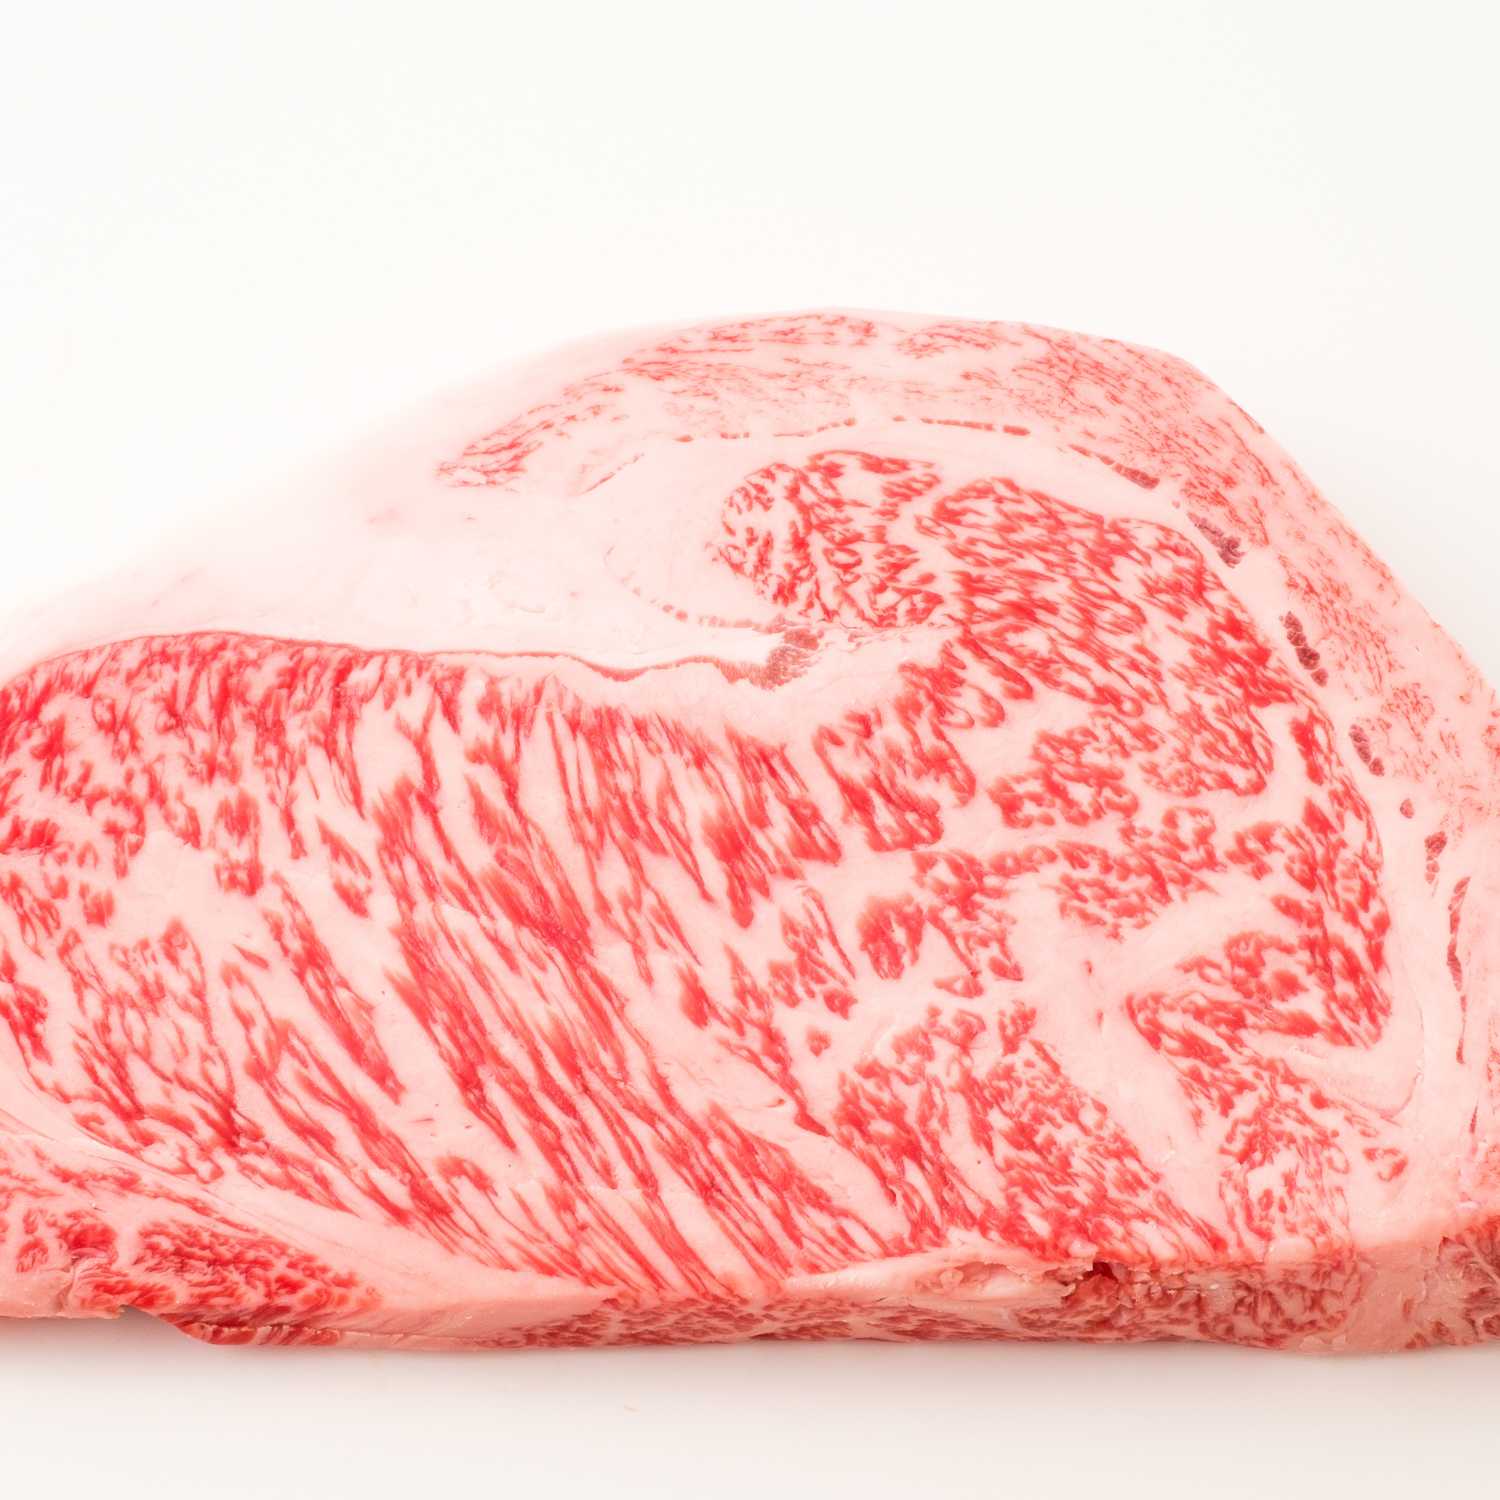 Korean Premium Hanwoo Ribeye Steak